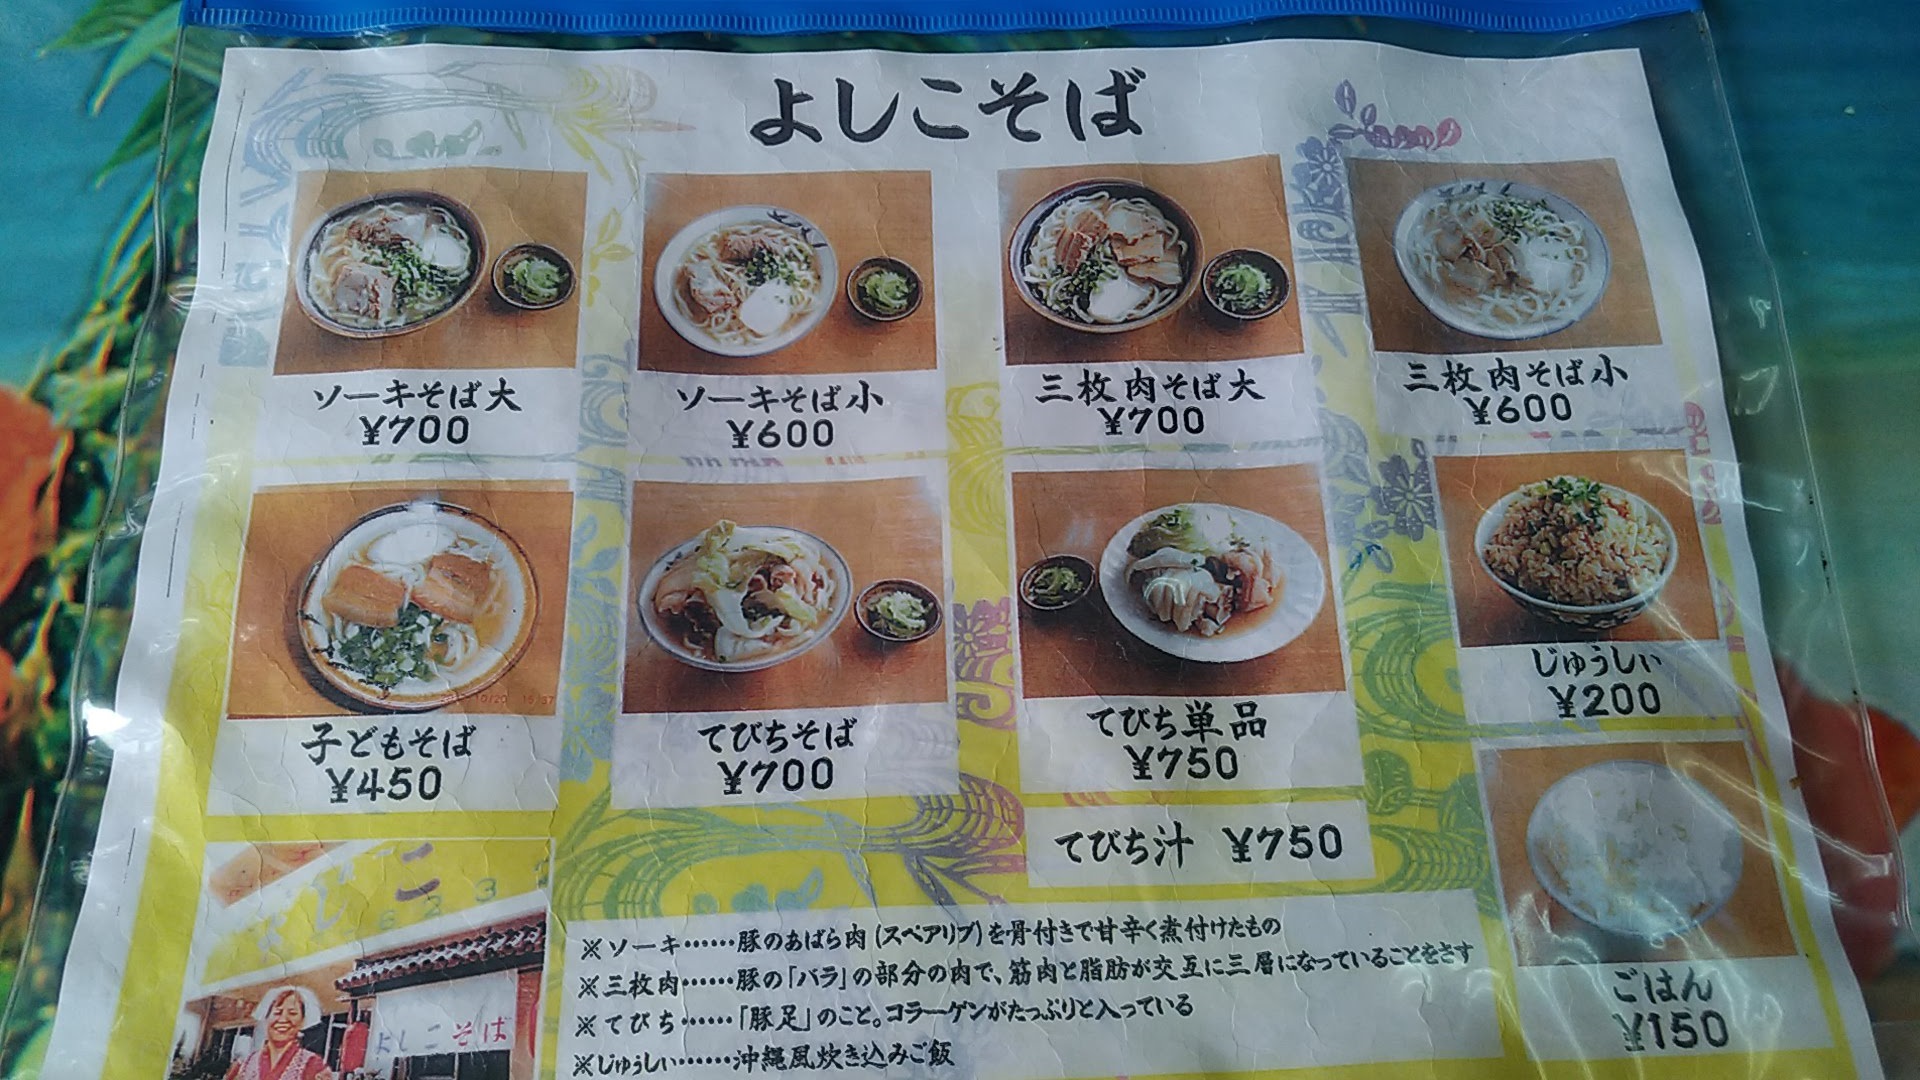 The menu of Sobaya Yoshiko